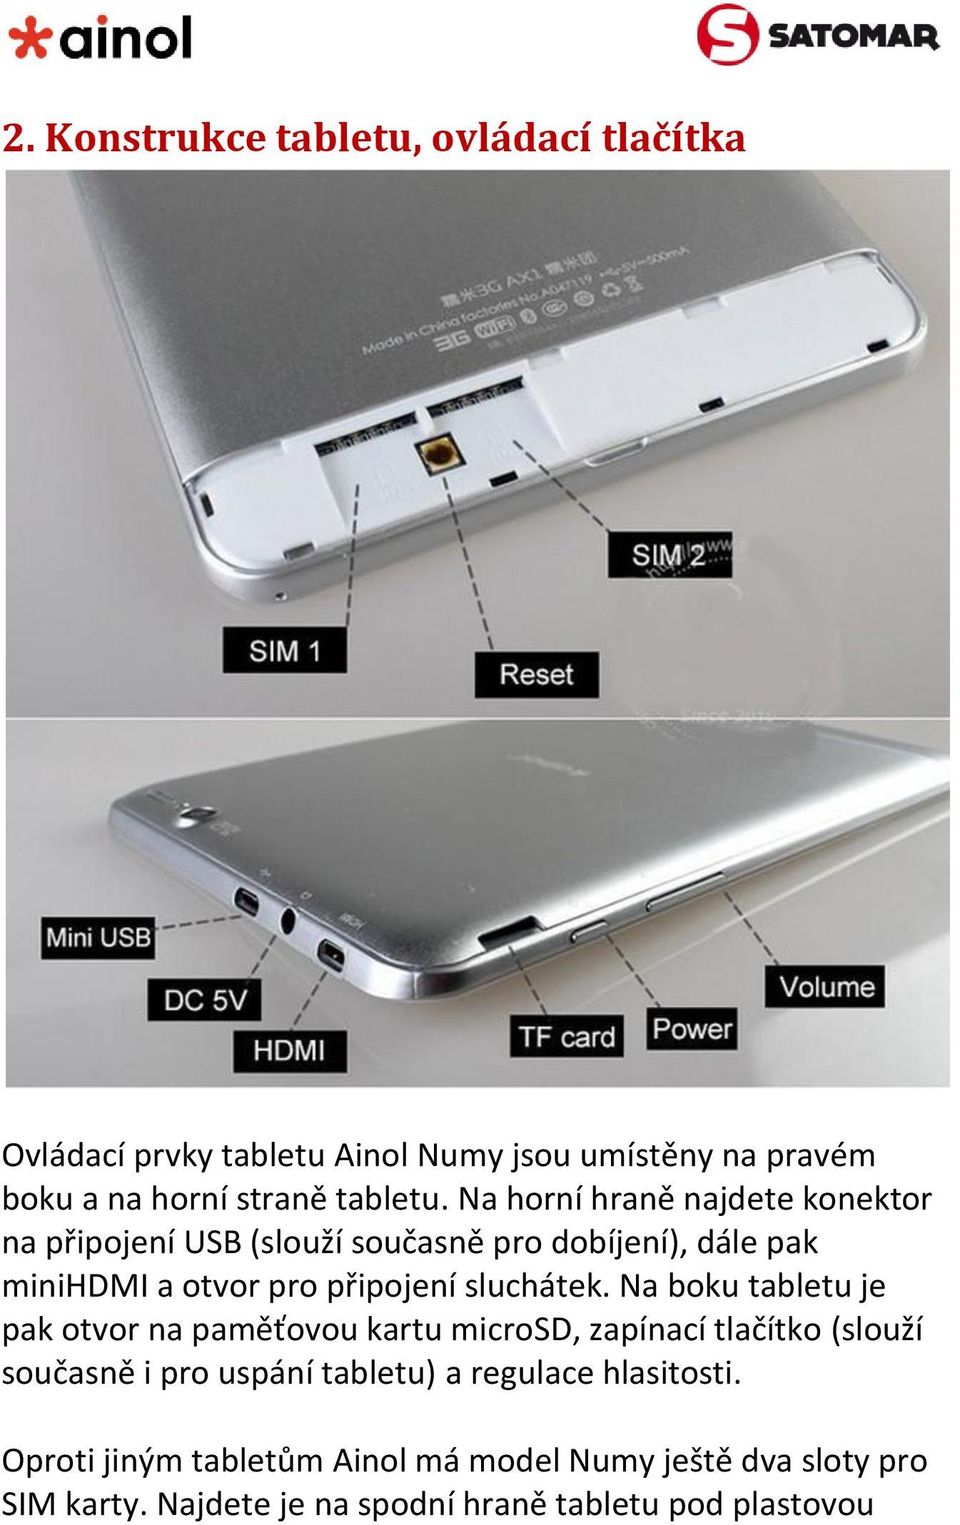 Na boku tabletu je pak otvor na paměťovou kartu microsd, zapínací tlačítko (slouží současně i pro uspání tabletu) a regulace